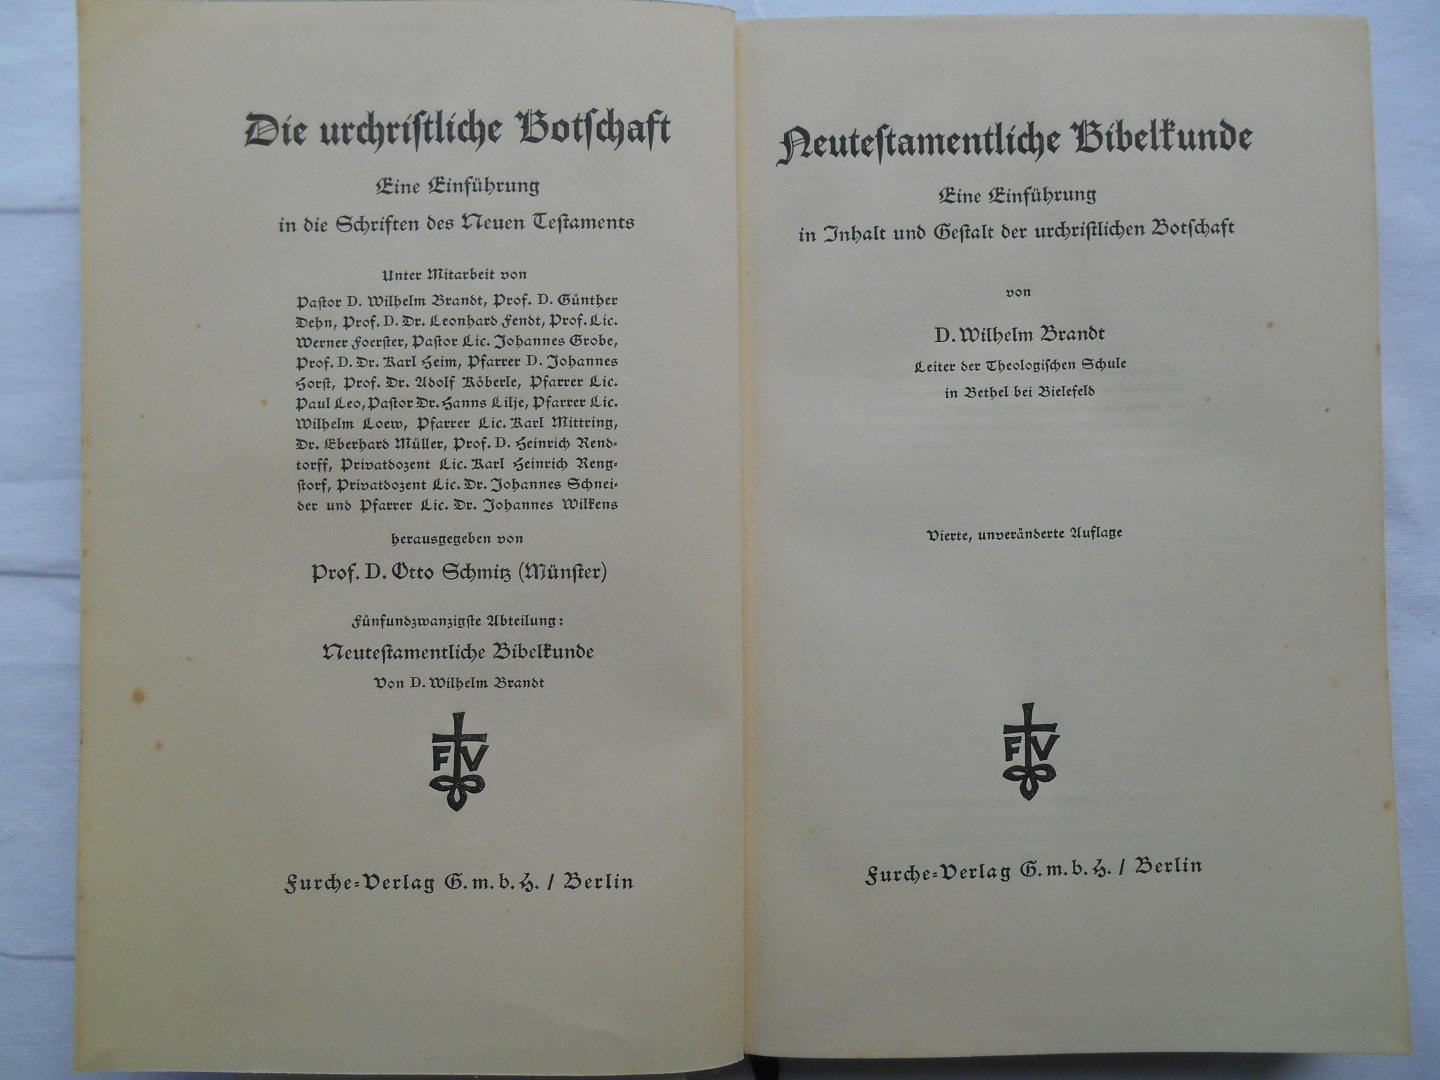 Wilhelm Brandt - Neutestamentliche Bibelkunde